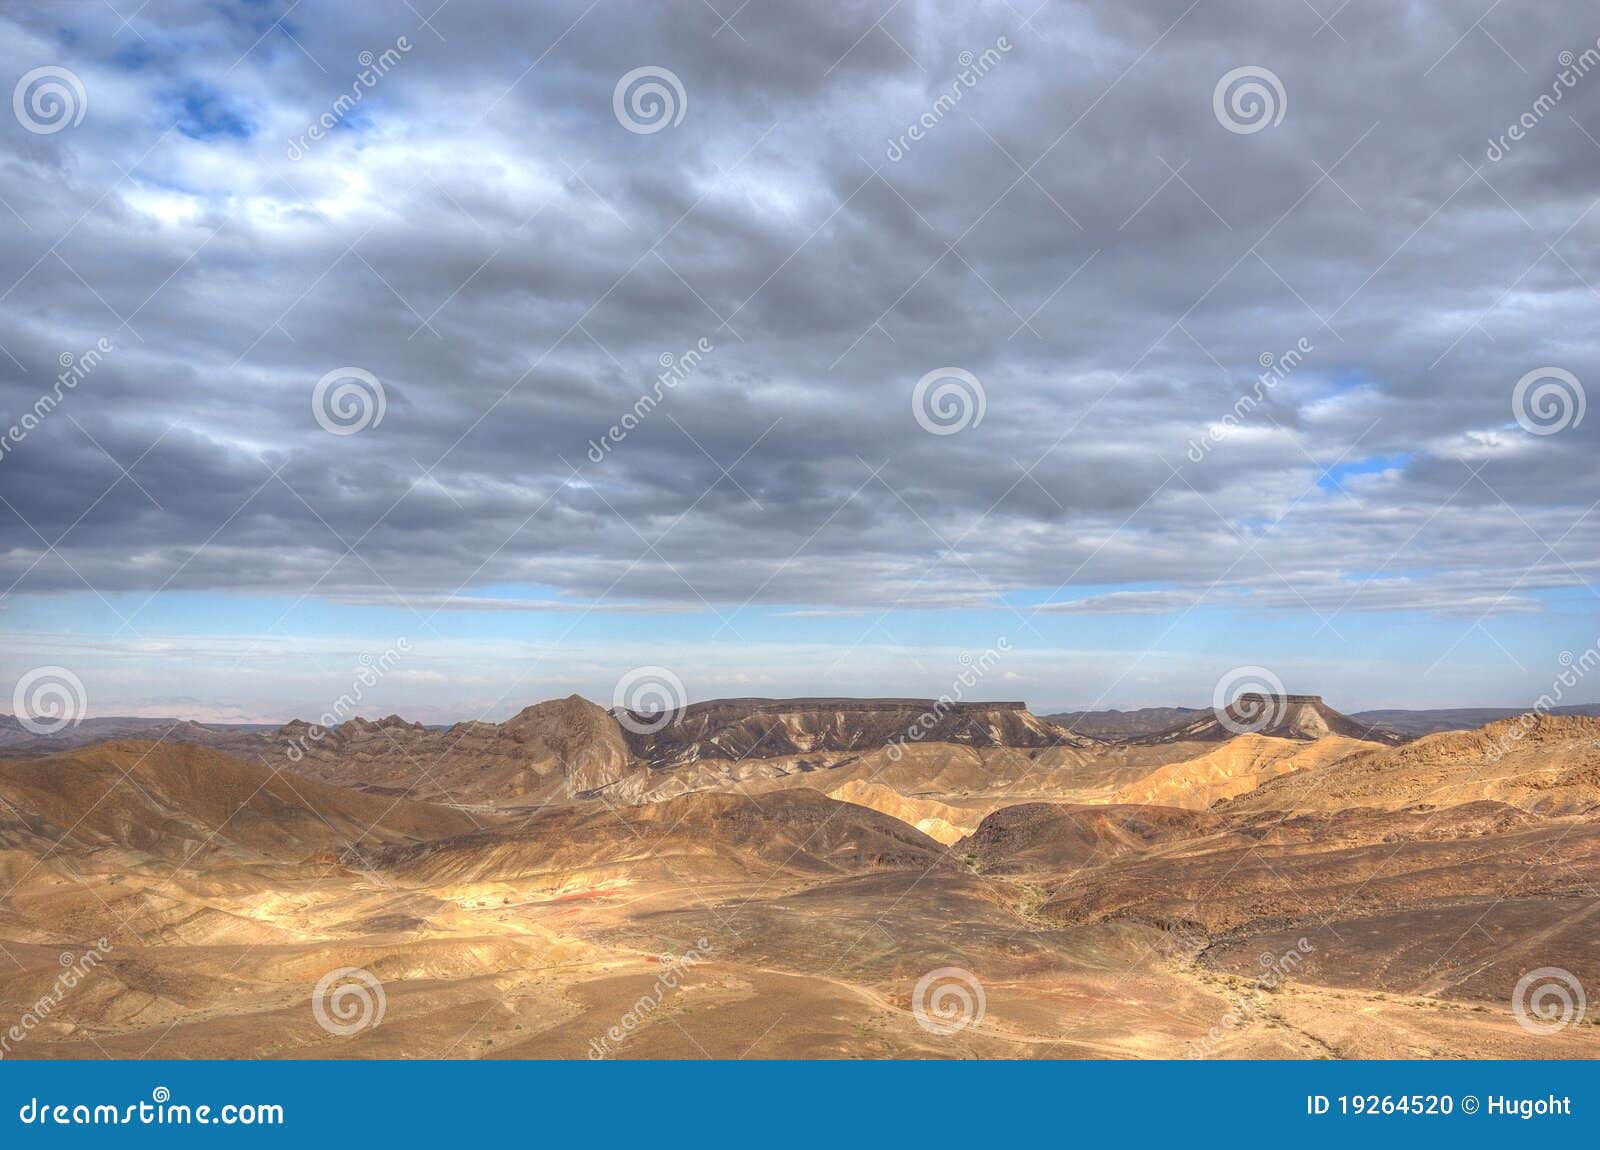 ramon canyon, israel